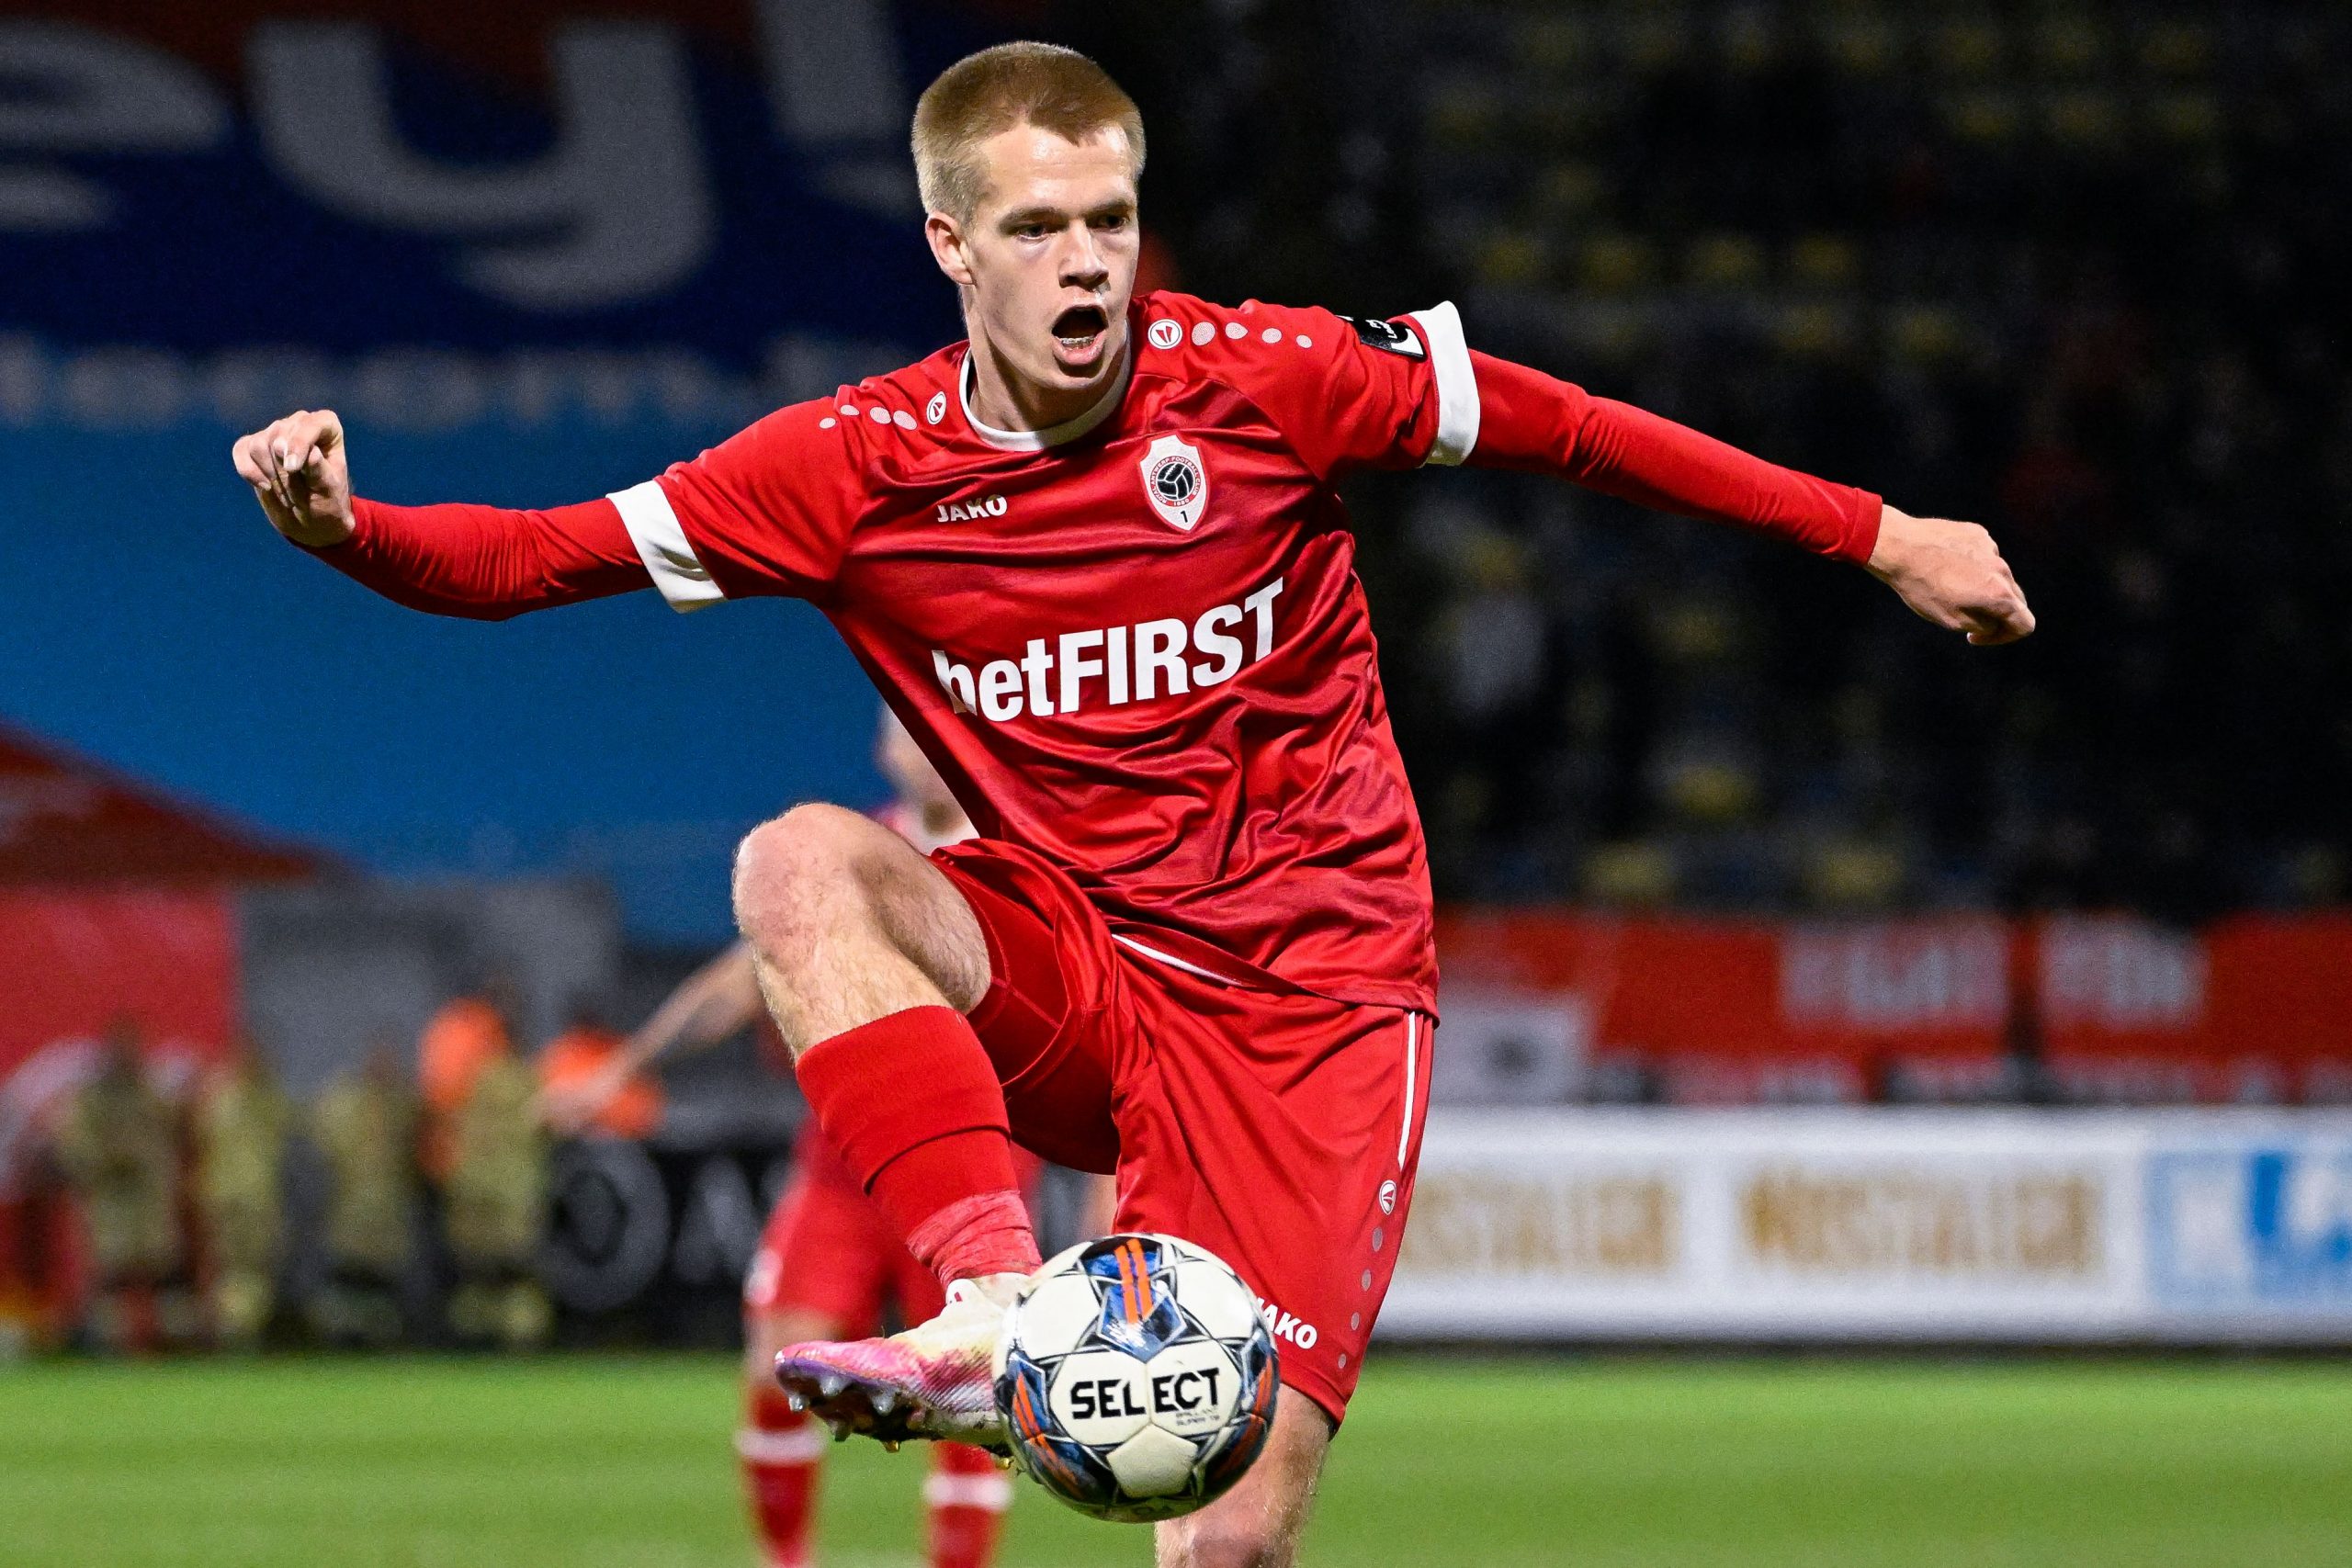 Manchester United 'keeping tabs' on 18-year-old Royal Antwerp midfielder Arthur Vermeeren.